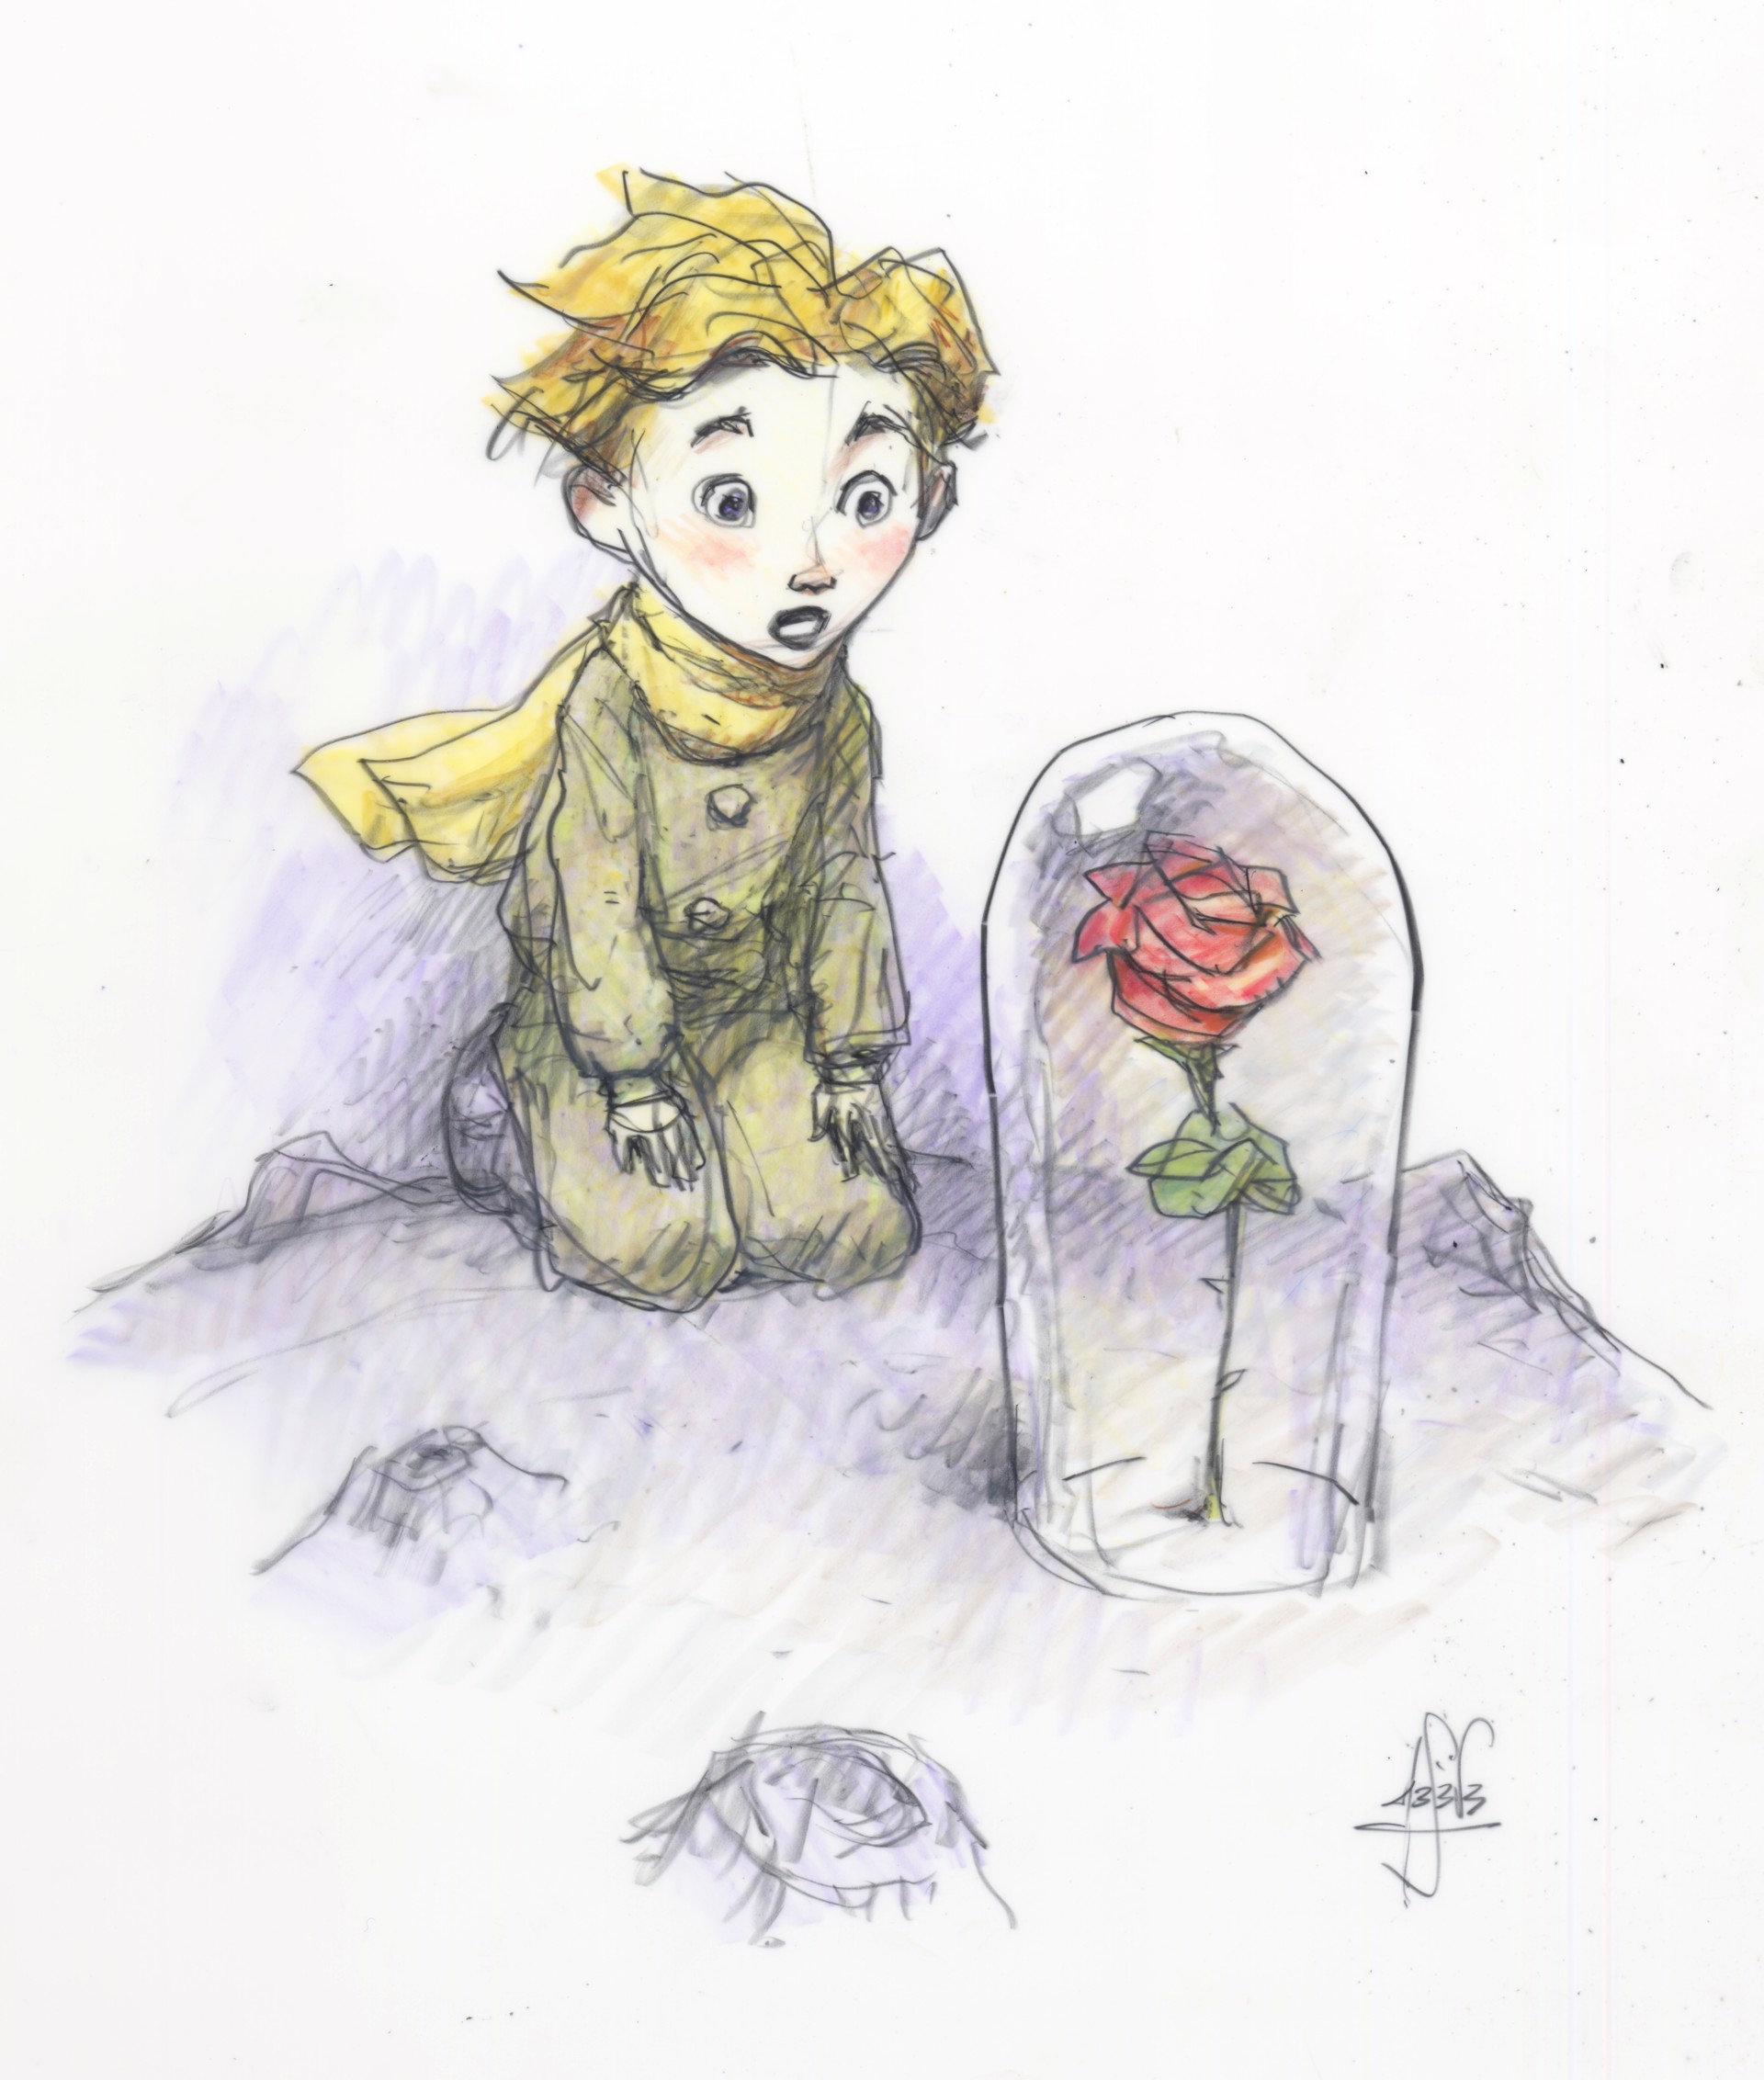 The Little Prince, Colored by Peter de Sève